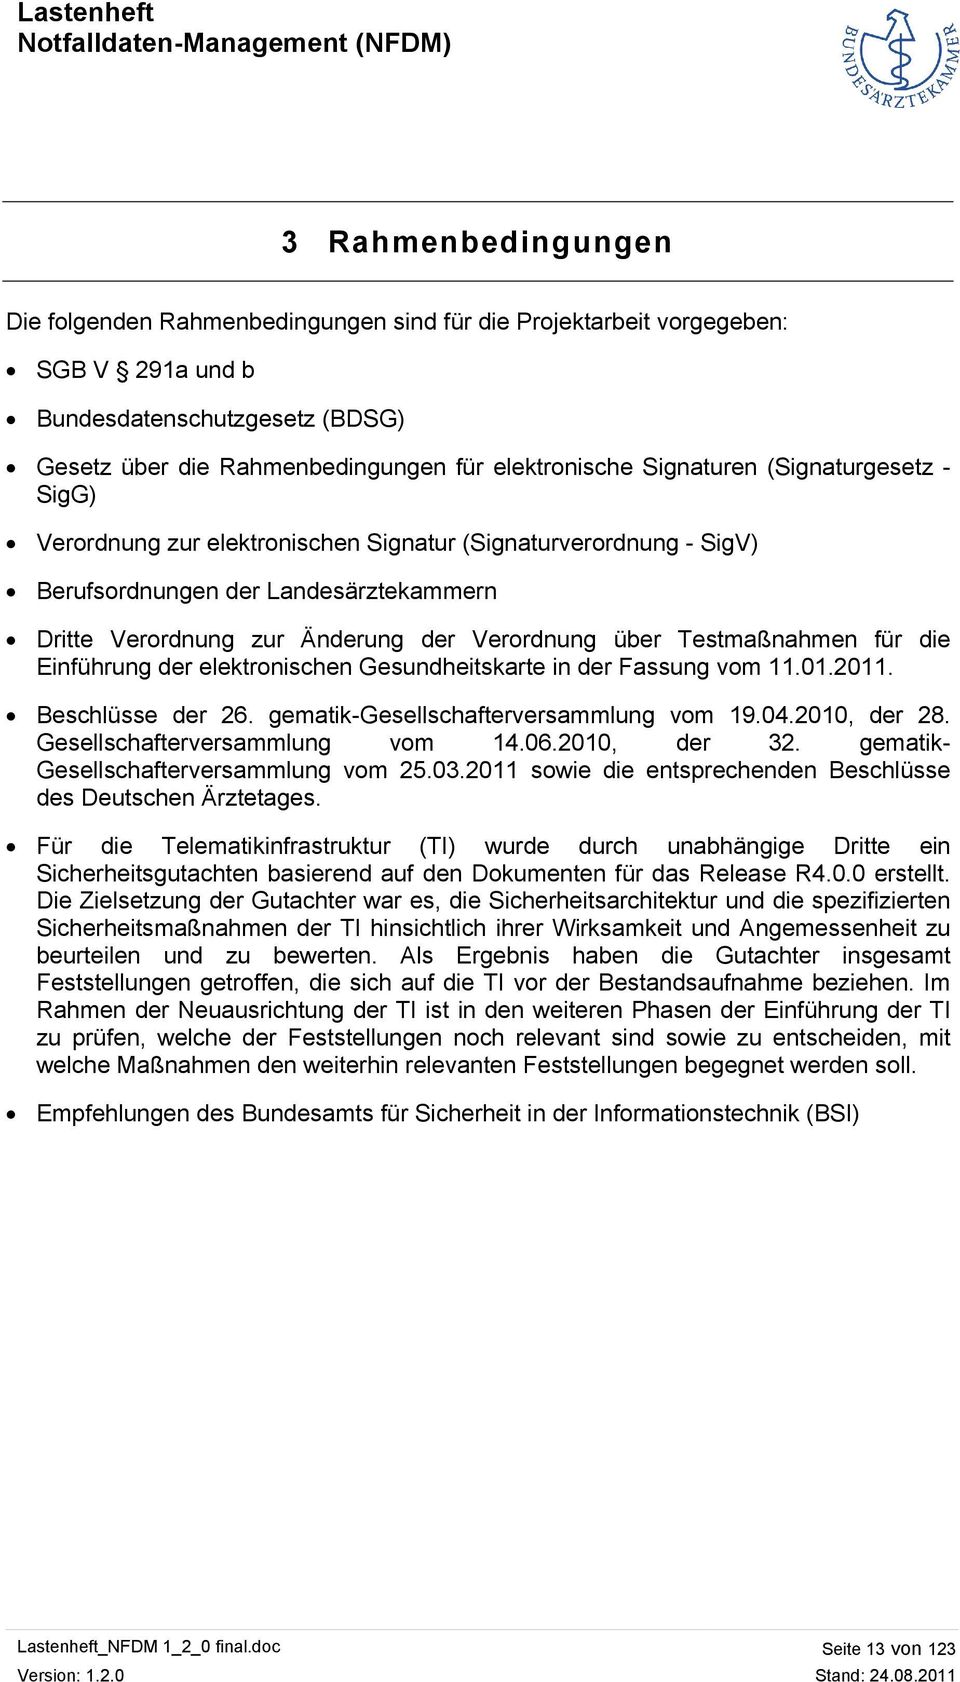 Testmaßnahmen für die Einführung der elektronischen Gesundheitskarte in der Fassung vom 11.01.2011. Beschlüsse der 26. gematik-gesellschafterversammlung vom 19.04.2010, der 28.